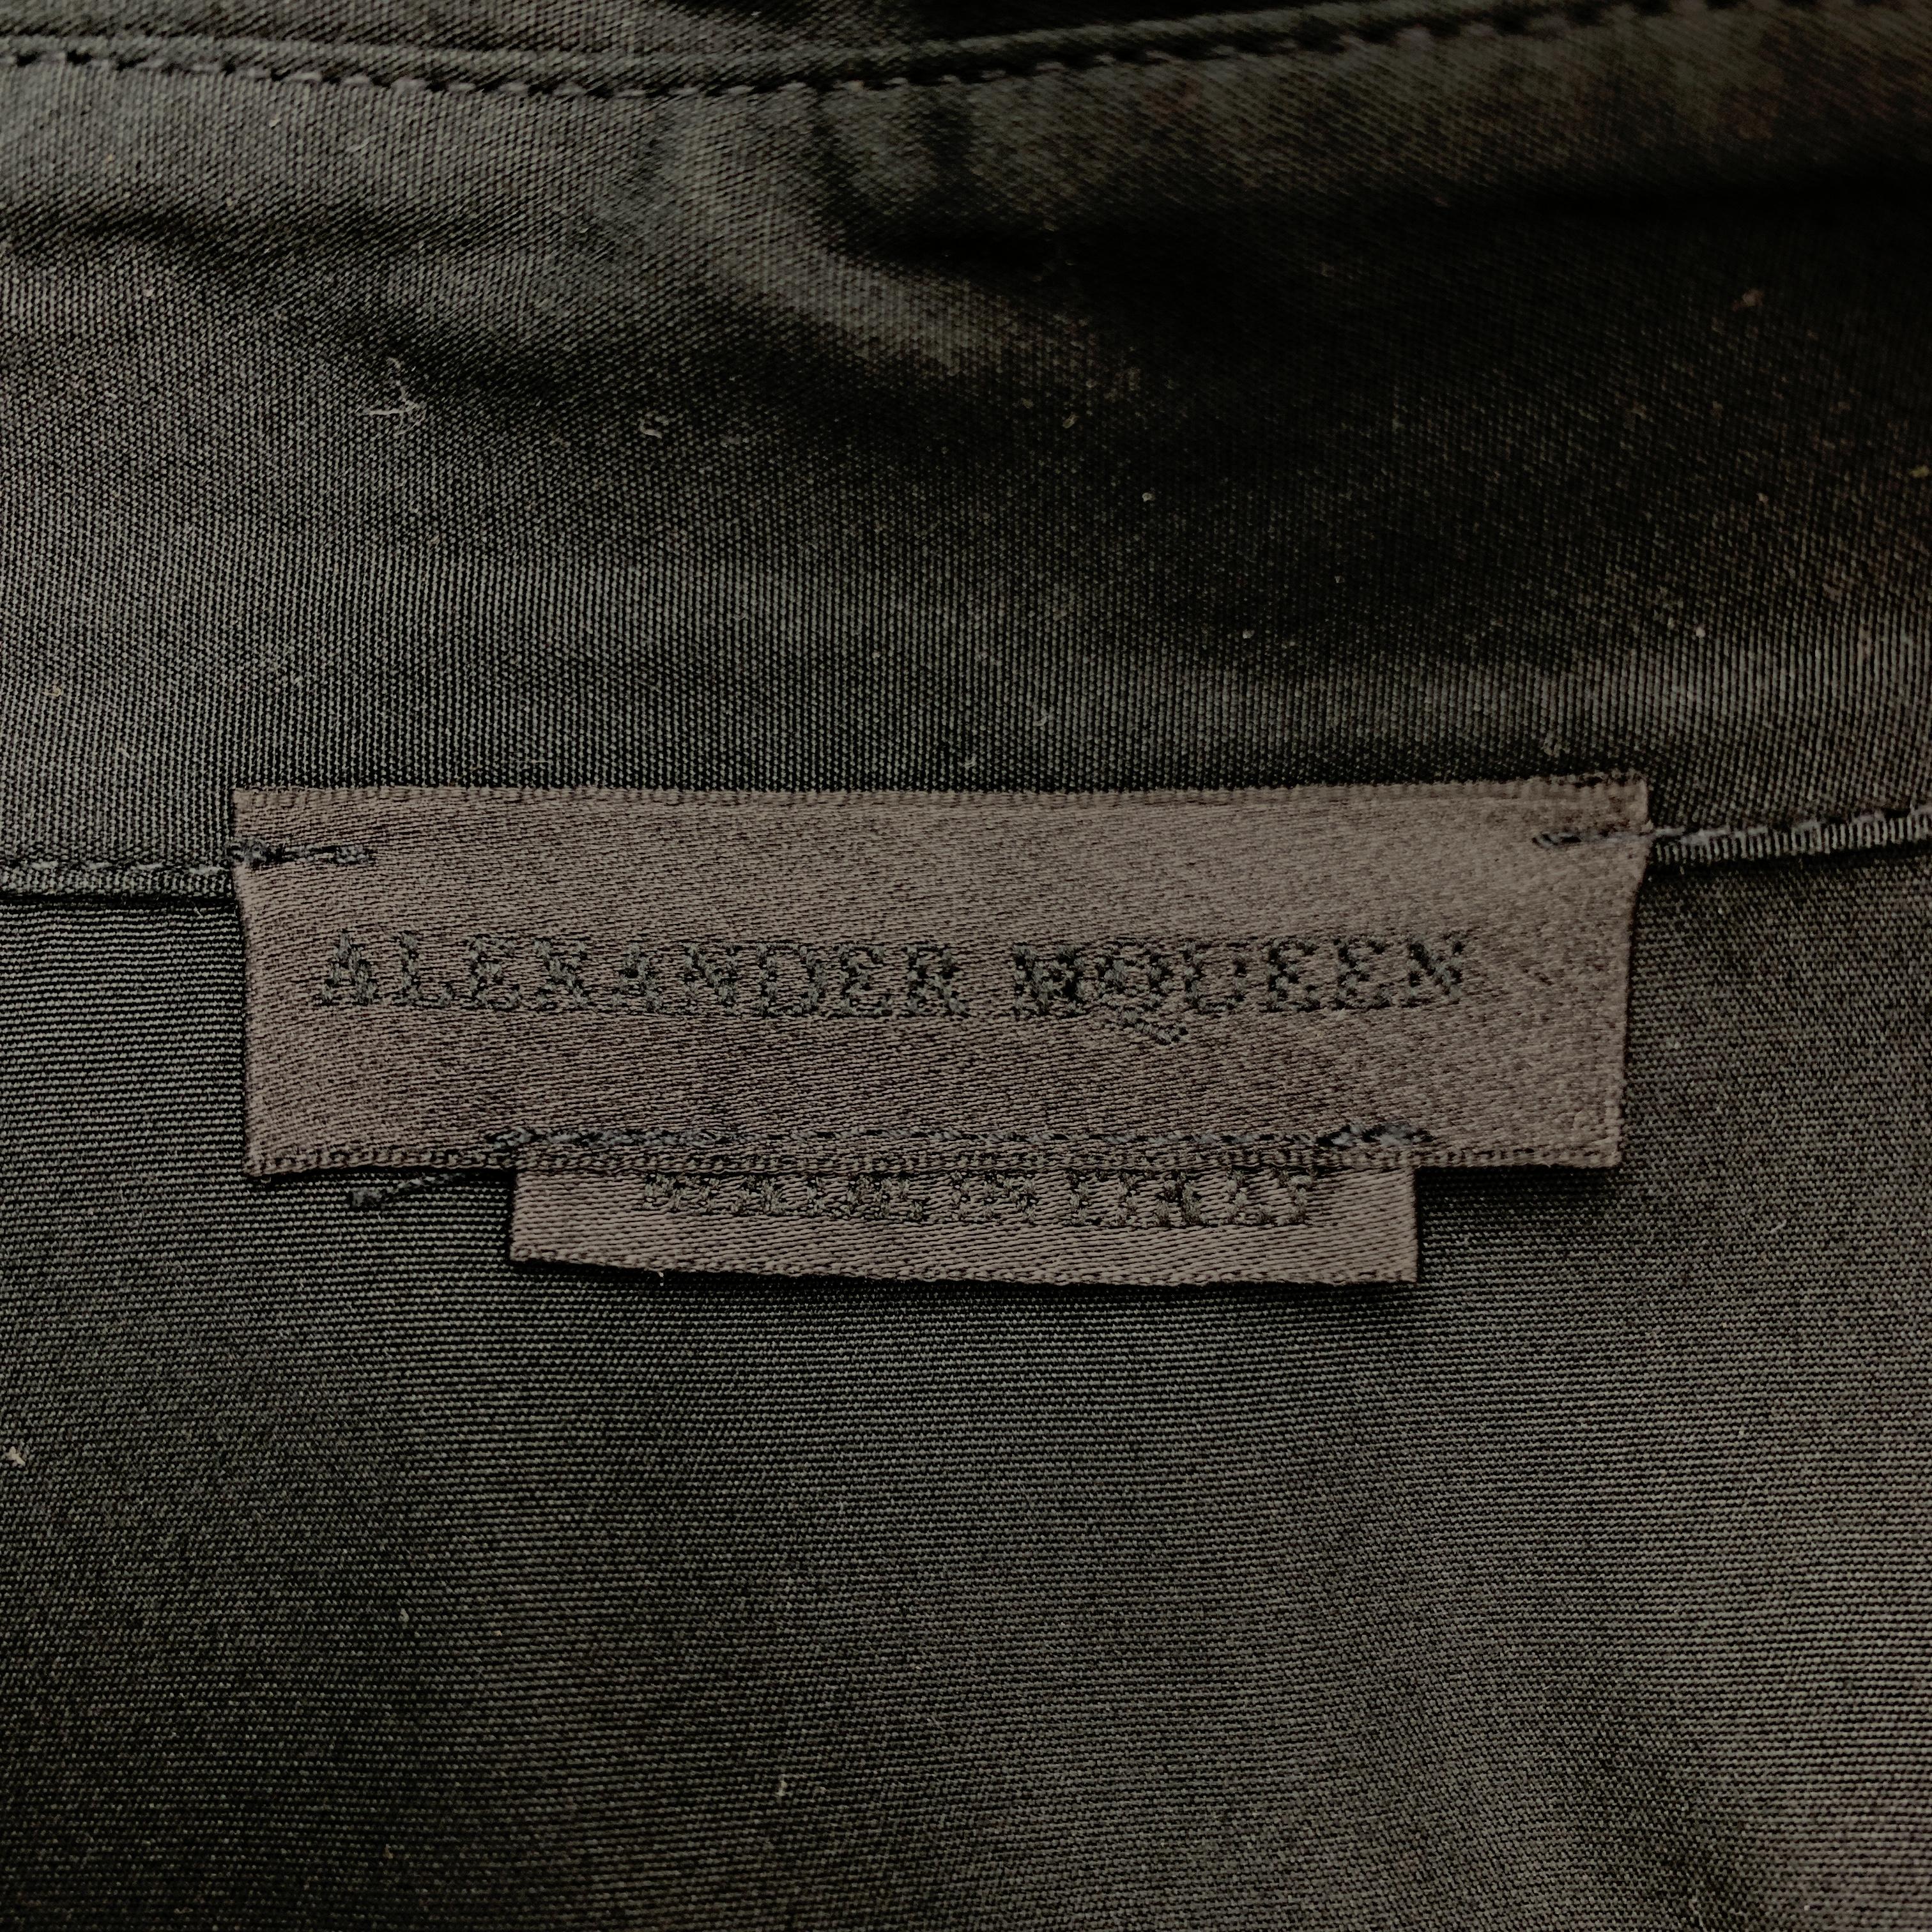 ALEXANDER MCQUEEN Size L Khaki & Black Color Block Cotton Long Sleeve Shirt 1